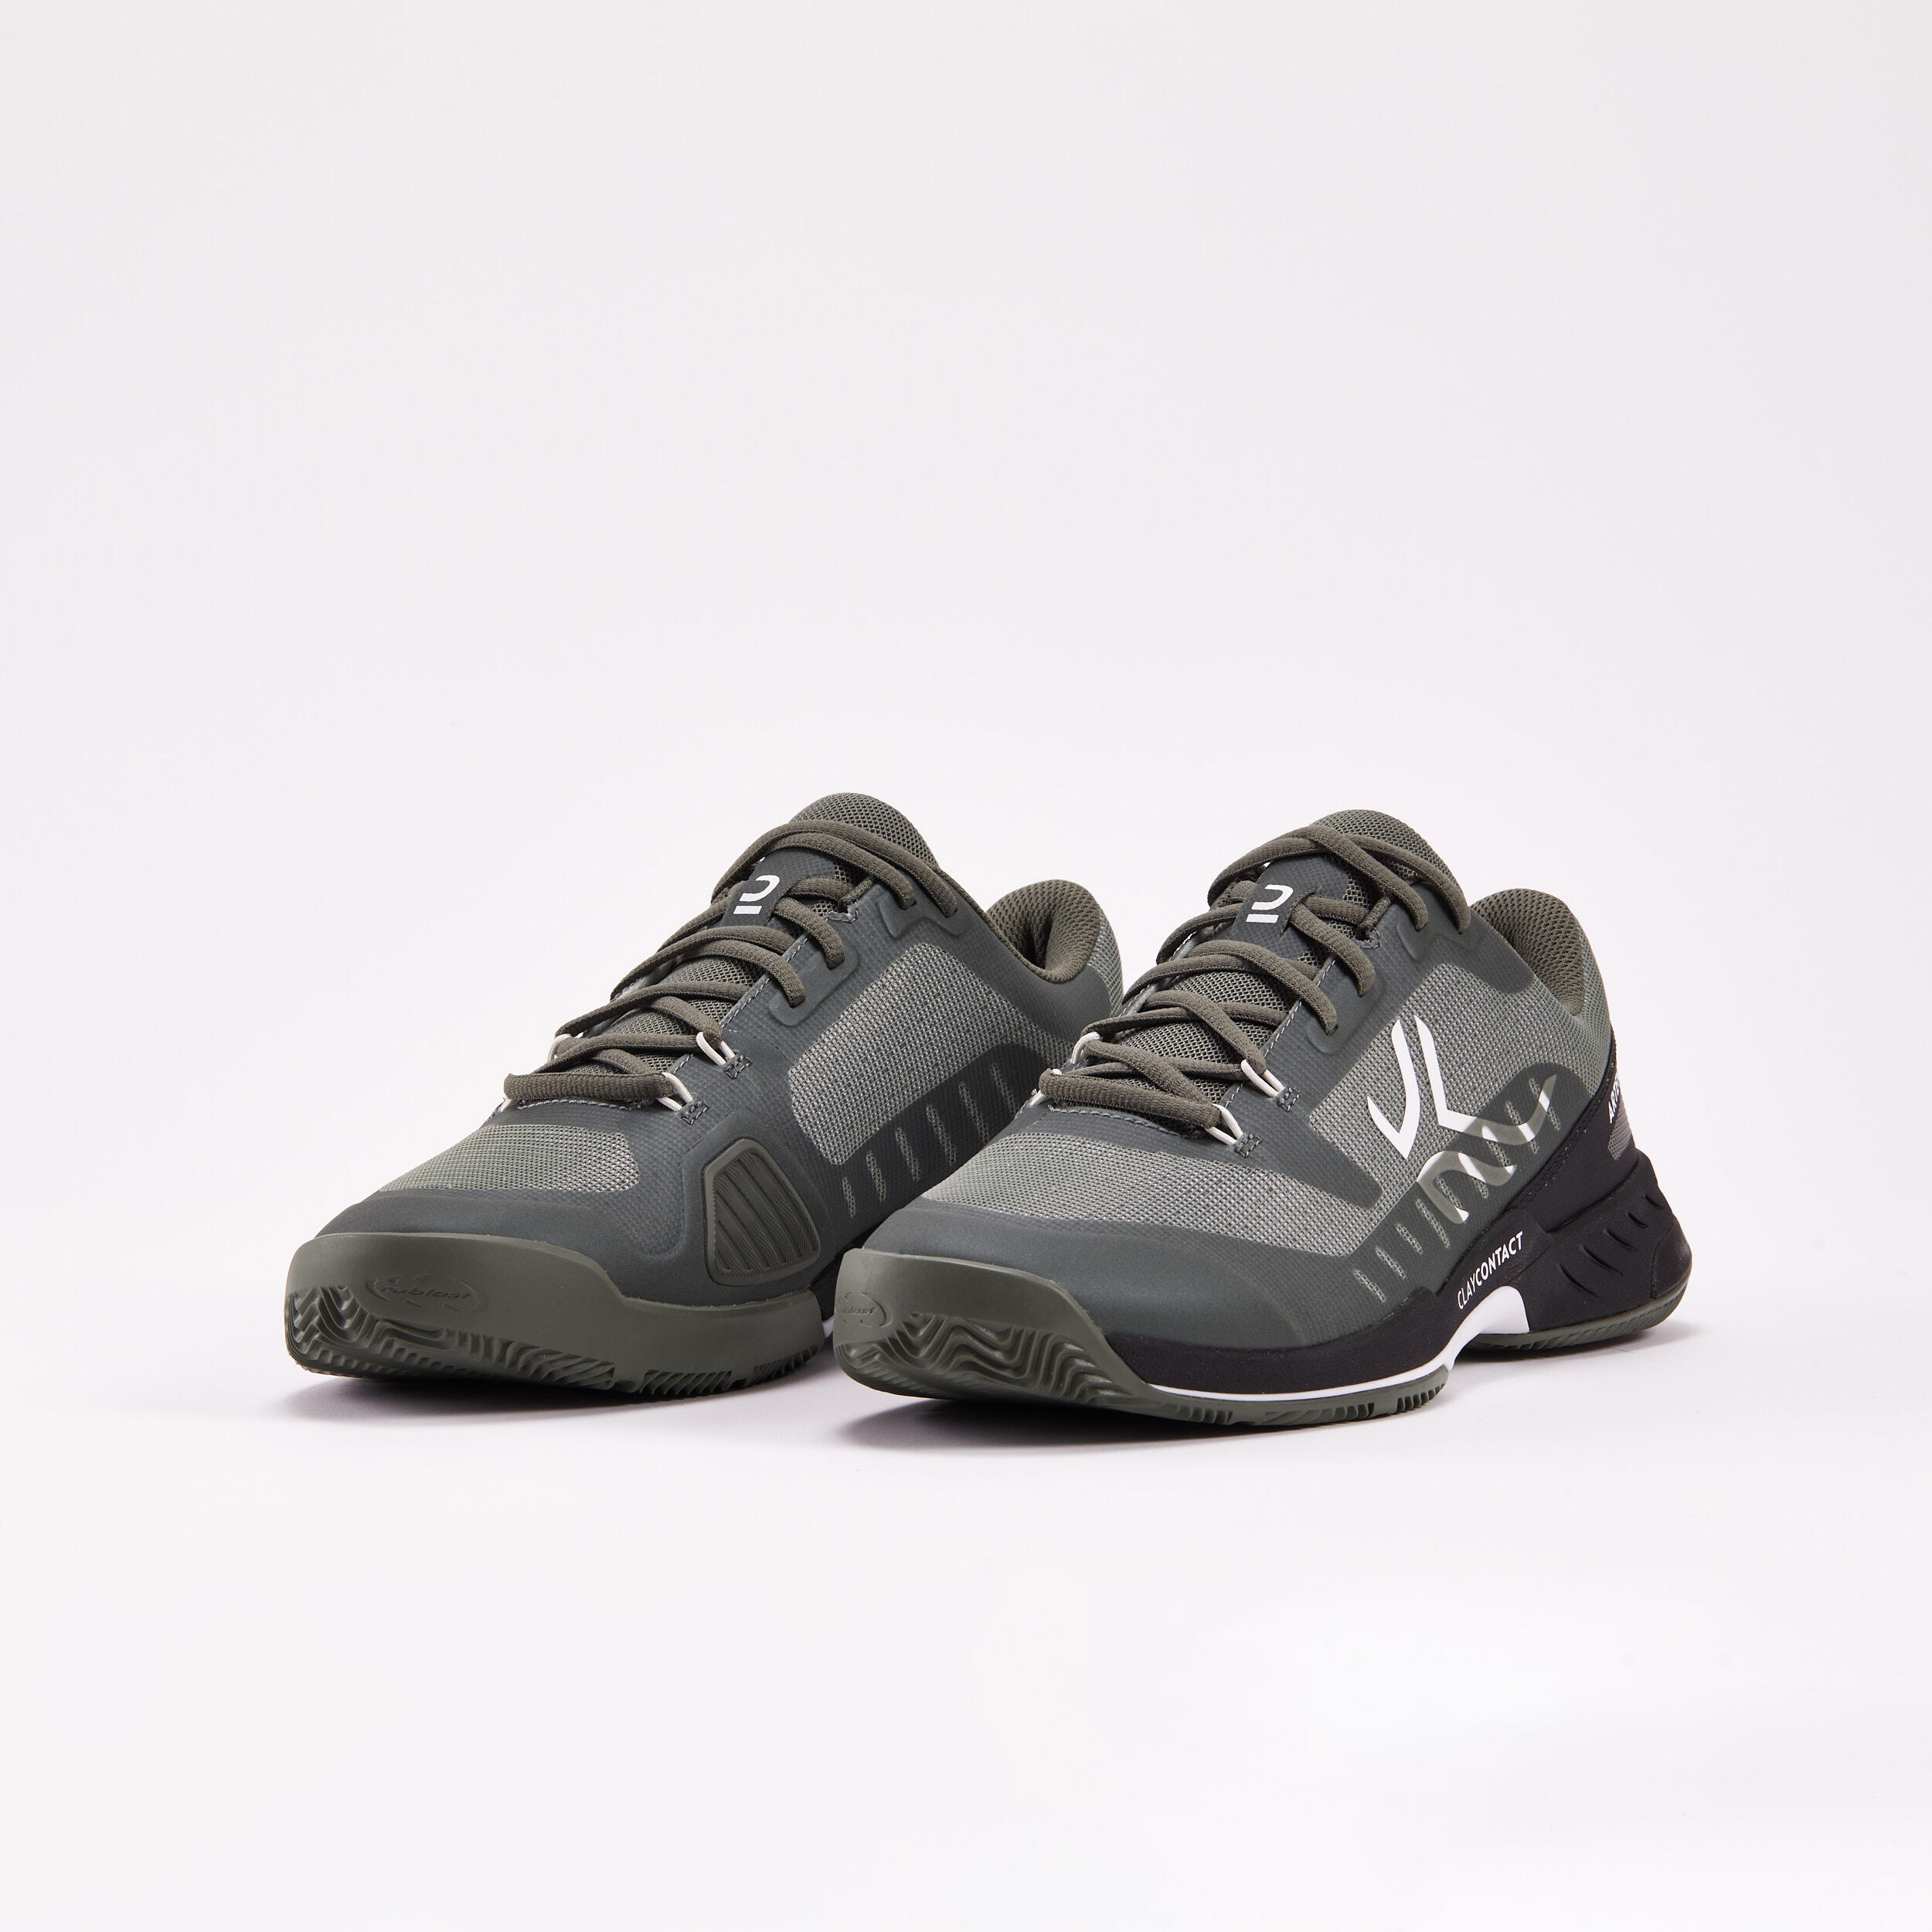 Men's Clay Court Tennis Shoes Fast - Khaki/Black 4/8